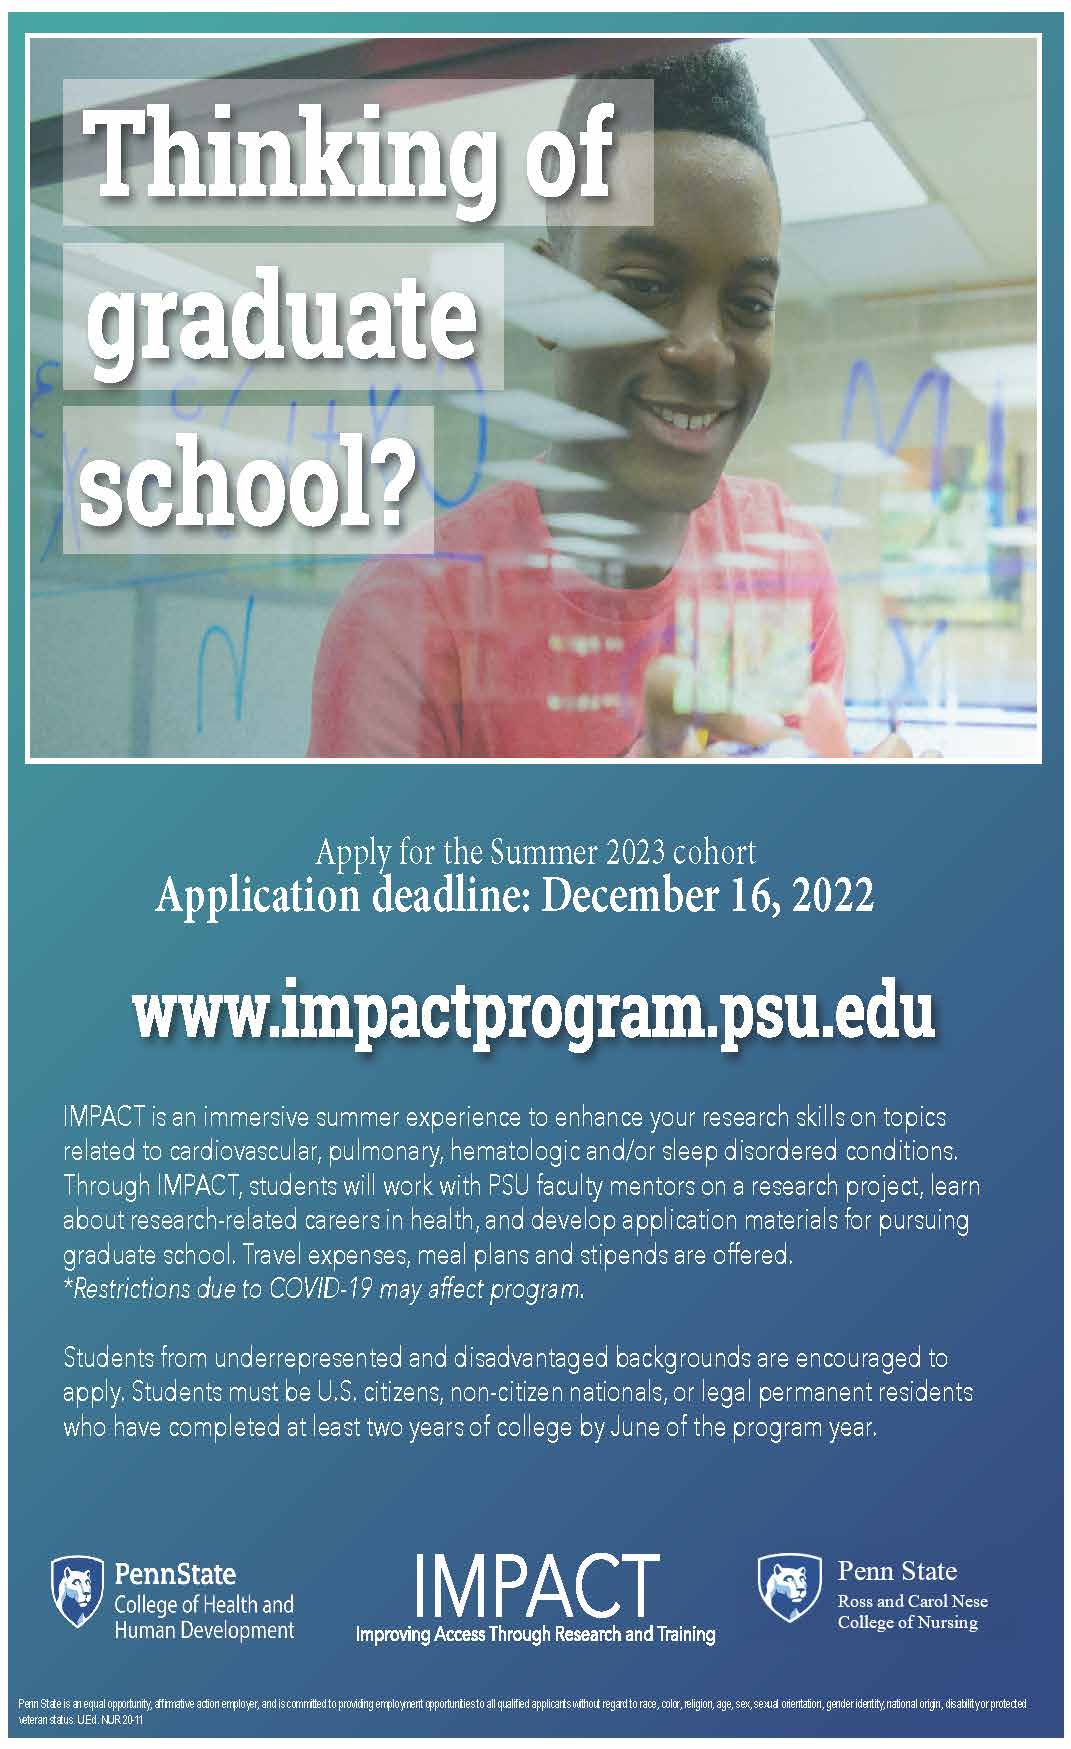 2023 IMPACT Program at Penn State